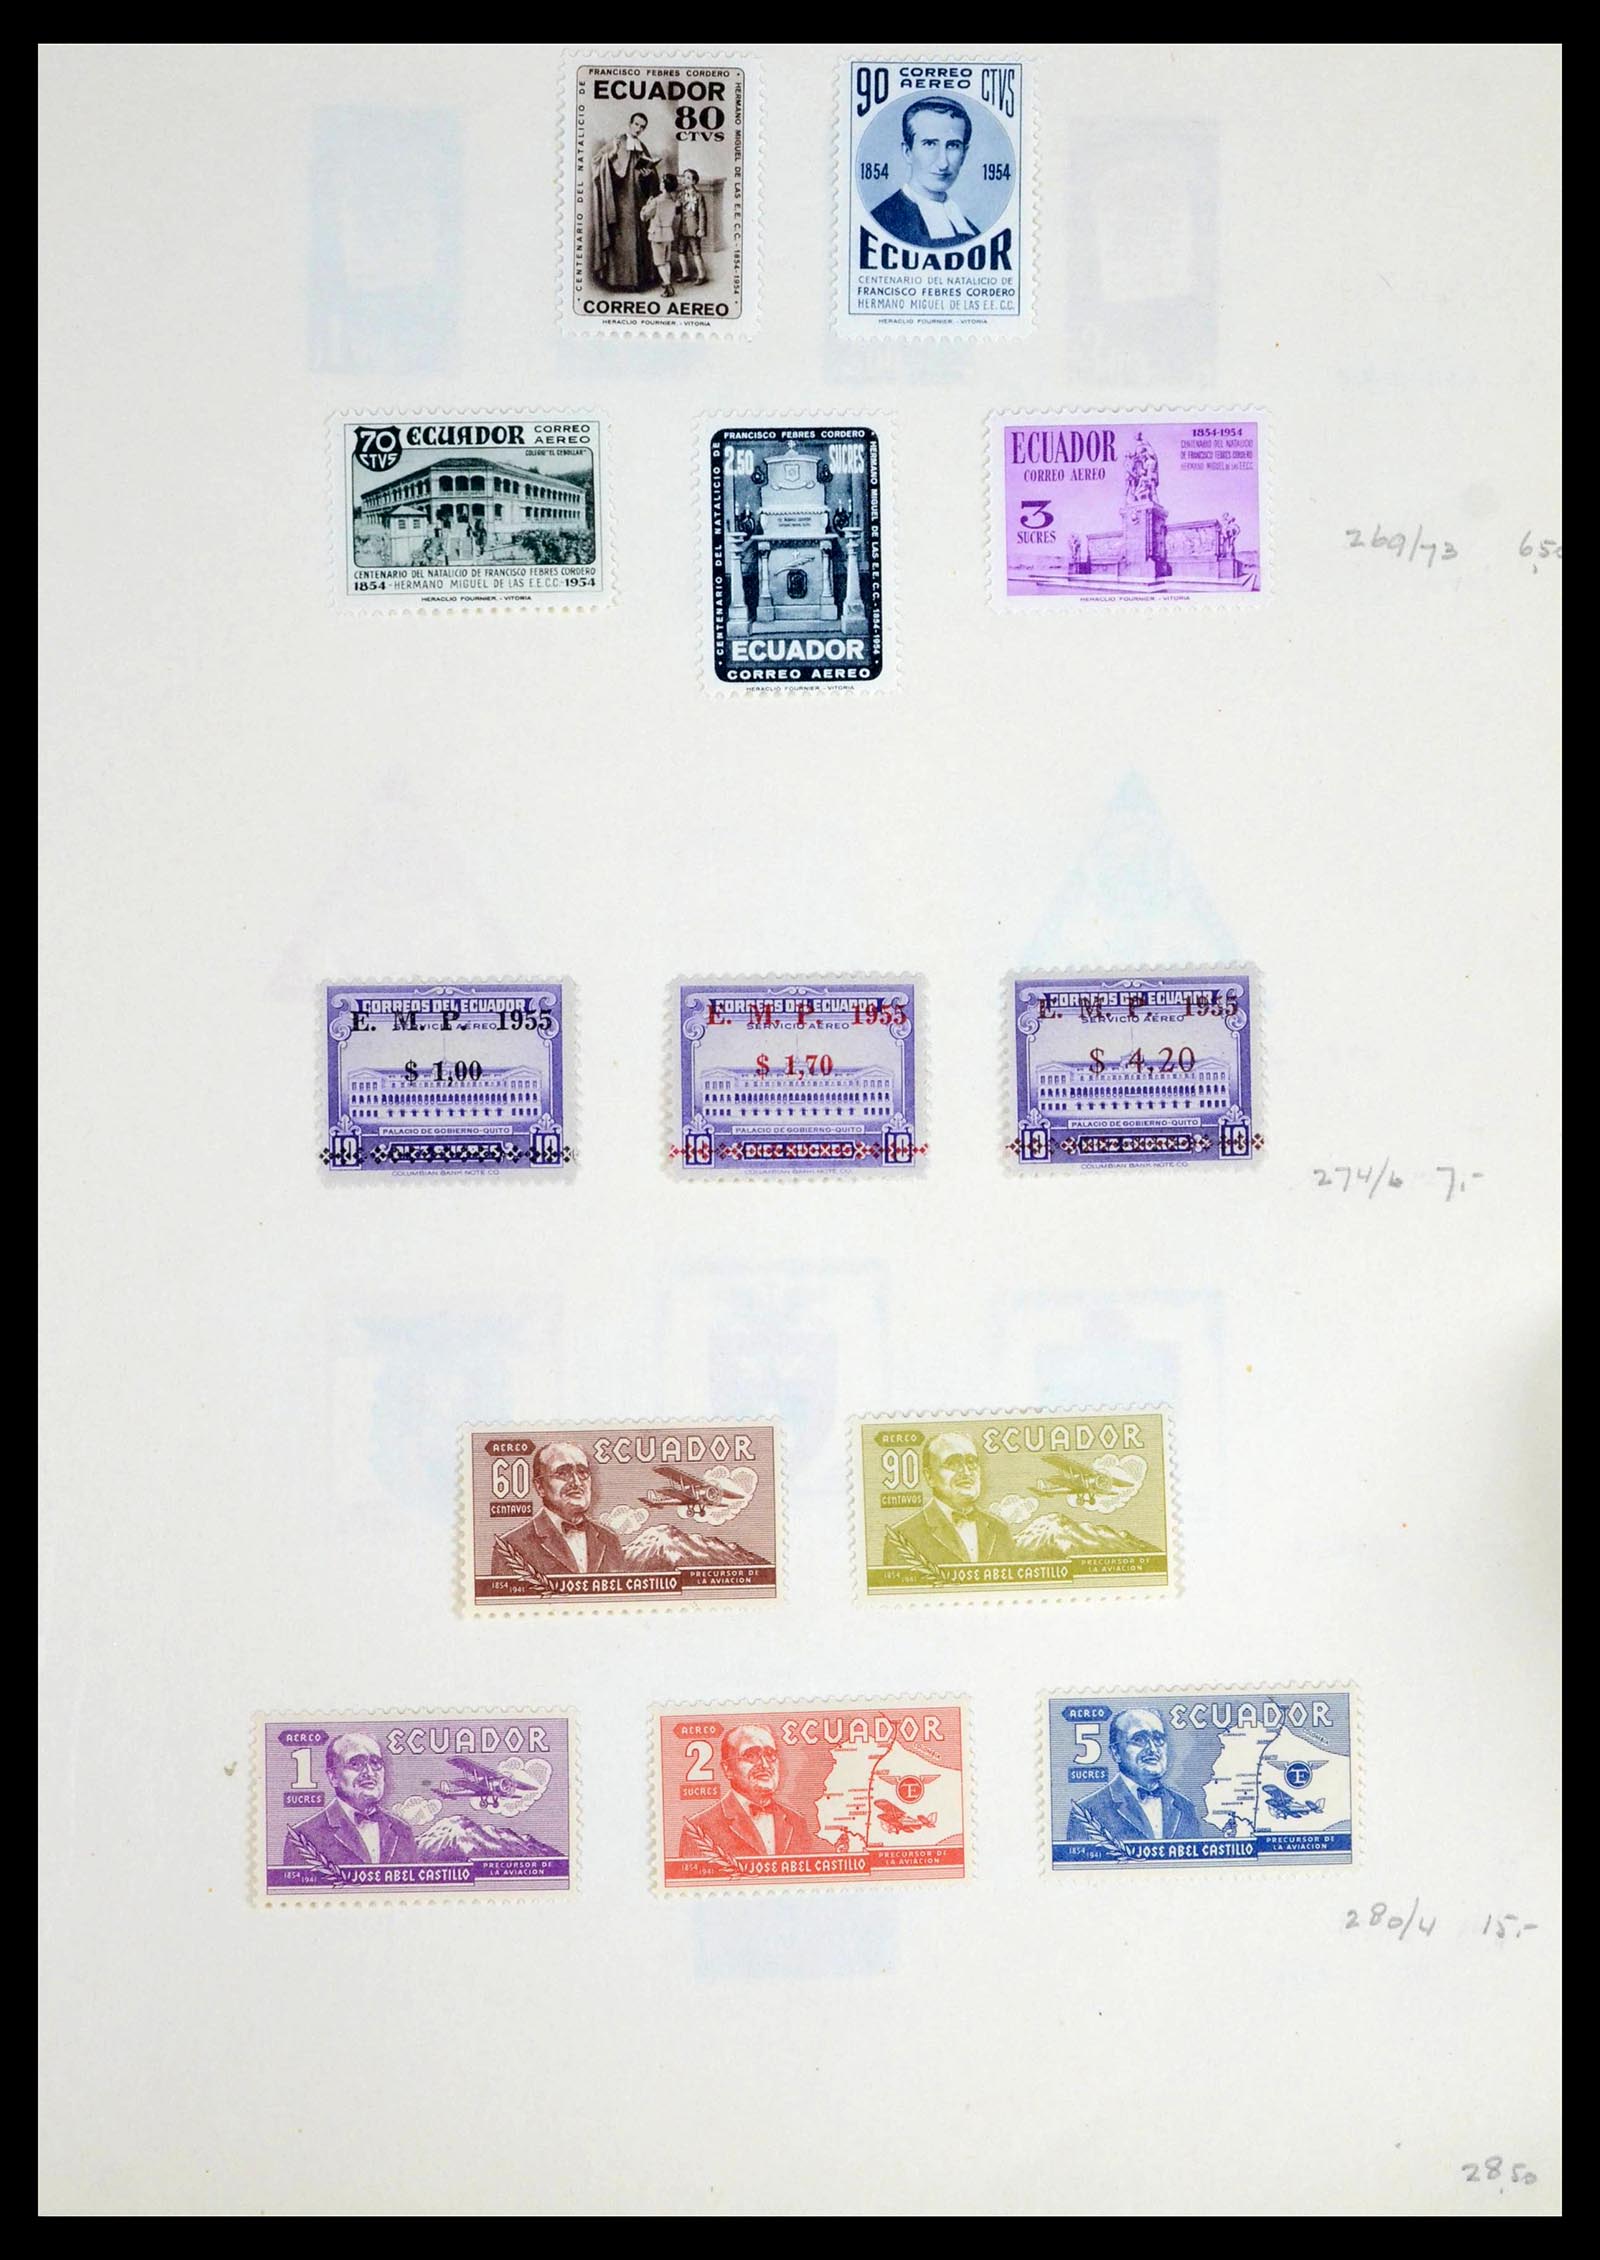 39456 0022 - Stamp collection 39456 Ecuador 1865-1960.